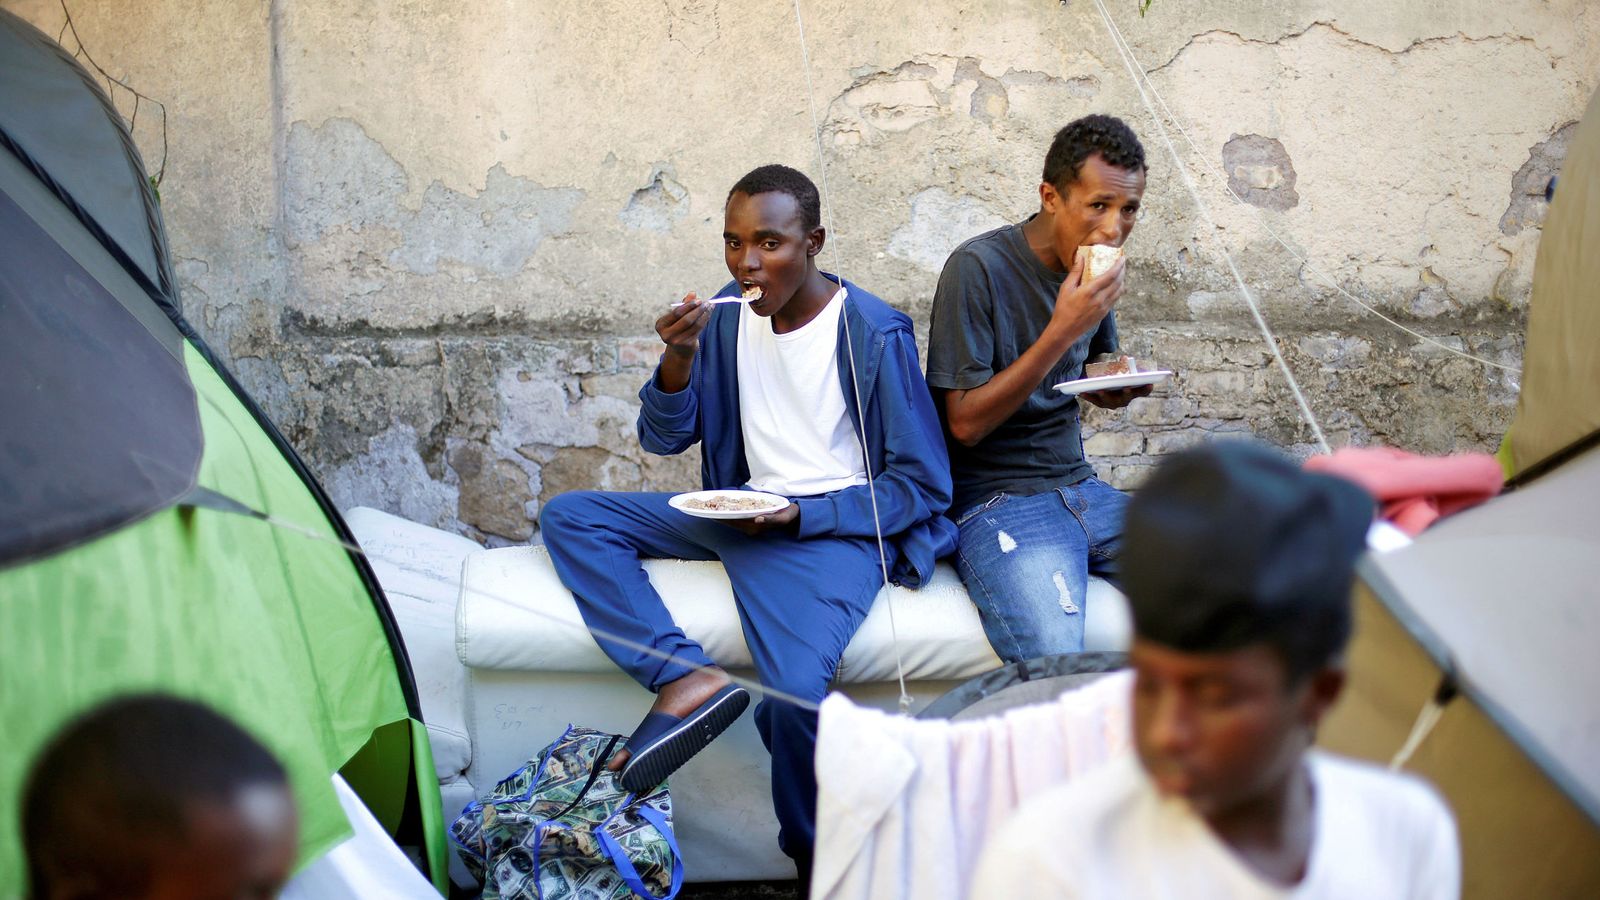 Foto: Un grupo de inmigrantes come alimentos proporcionados por voluntarios en un campamento improvisado en el centro de Roma, en agosto de 2016. (Reuters)